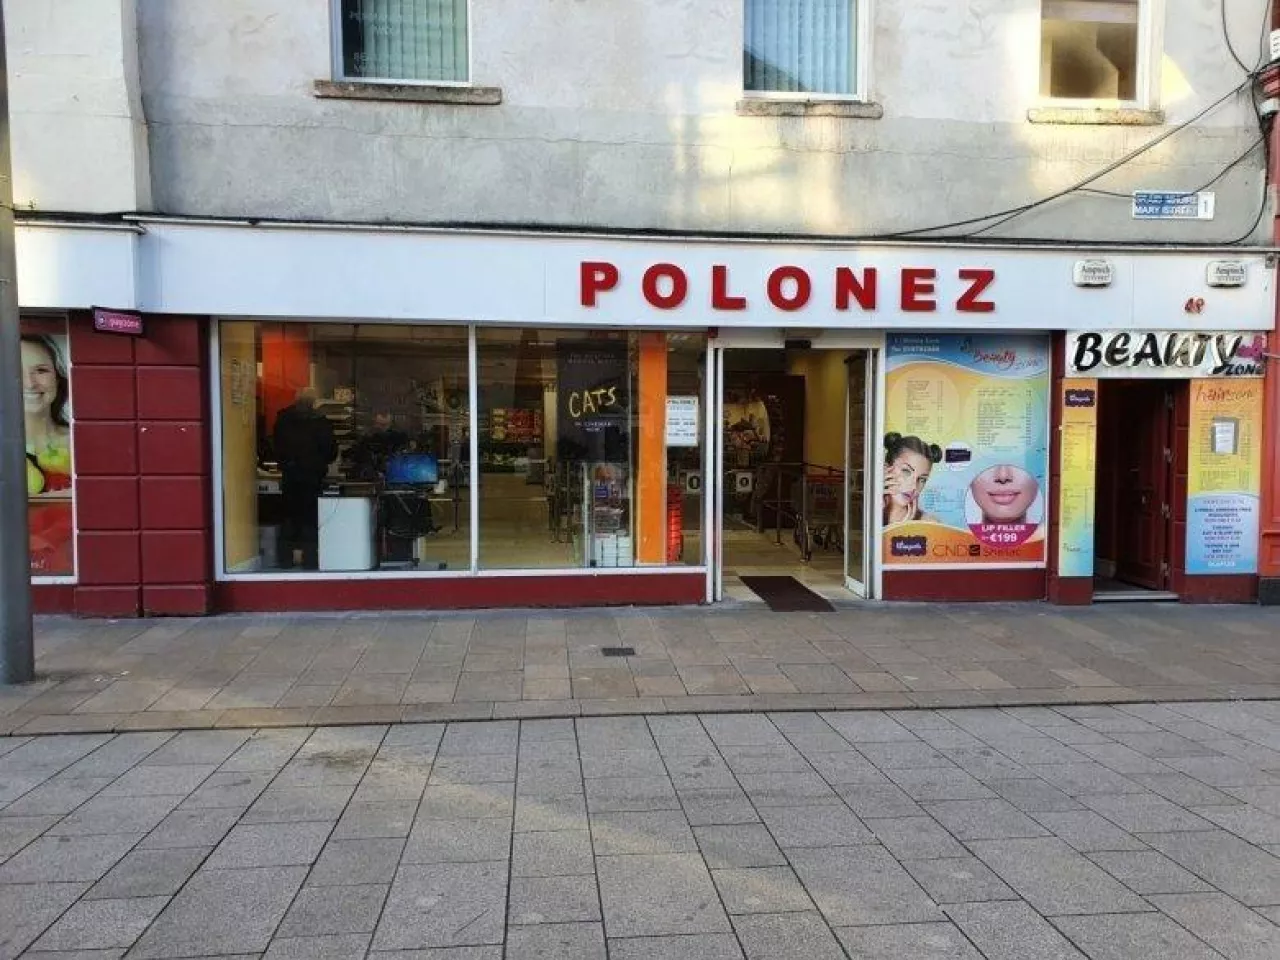 Sieć Polonez liczy już 30 sklepów (fot. wiadomoscihandlowe.pl)